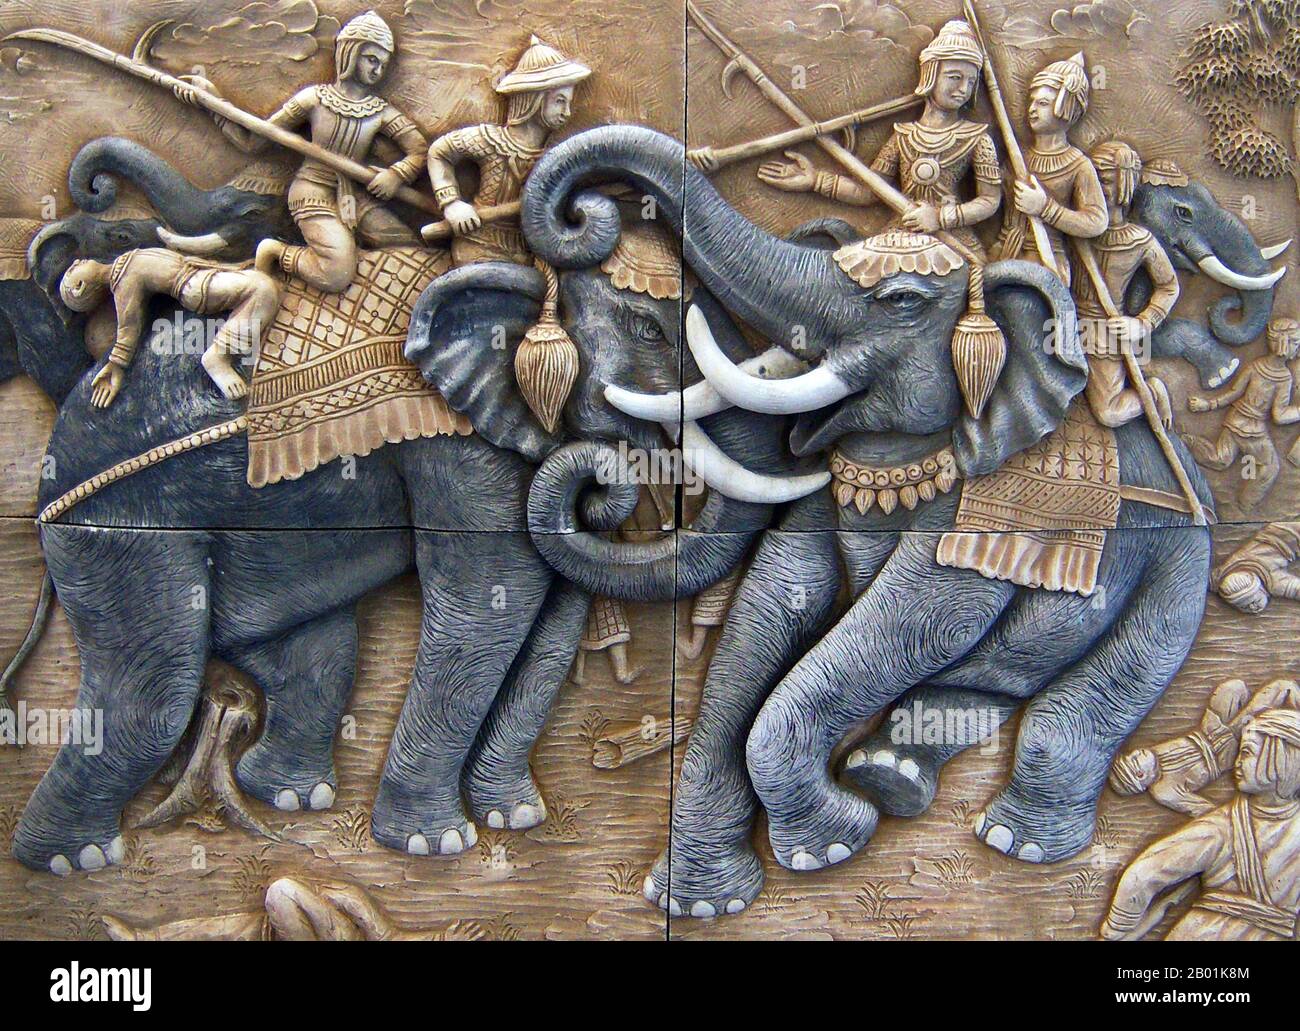 Thailand: Ein keramisches thailändisches Wandgemälde, das König Naresuan von Siam (1555/1556.–25. April 1605) zeigt, wie er den birmanischen Kronprinzen Minchit Sra in der Elefantenschlacht bei Nong Sarai, 1593, besiegt und tötet. 1592 befahl Nanda Bayin seinem Sohn Minchit Sra, Ayutthaya anzugreifen. Die siamesische Armee unter König Naresuan traf am 18. Januar 1593 in Nong Sarai auf die burmesische Armee. Die persönliche Schlacht zwischen Naresuan und Minchit Sra ist heute eine hochromantische historische Szene, bekannt als Yuddhahatthi, die Elefantenschlacht. Stockfoto